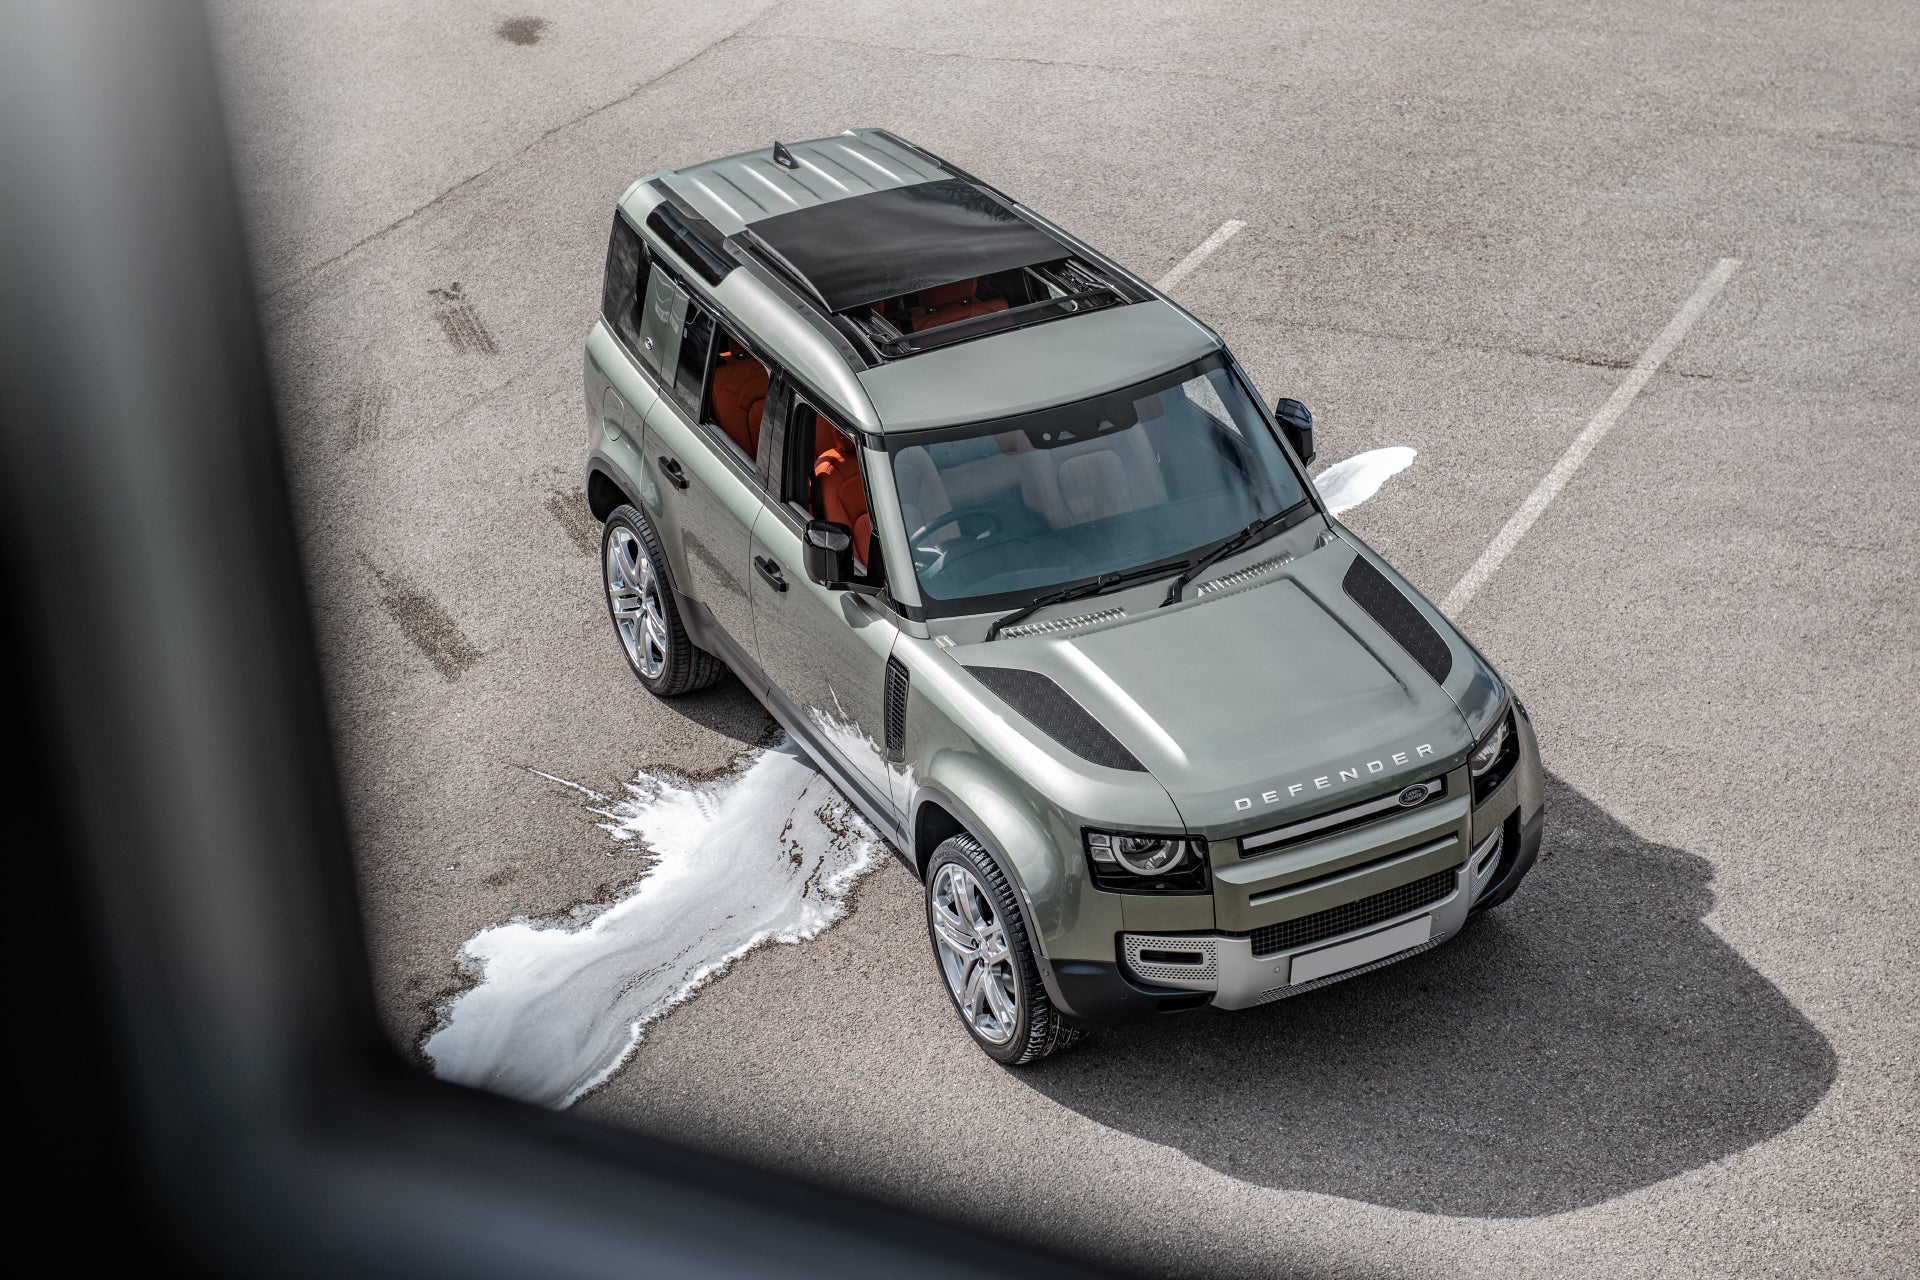 Land Rover Defender 110 (2020)